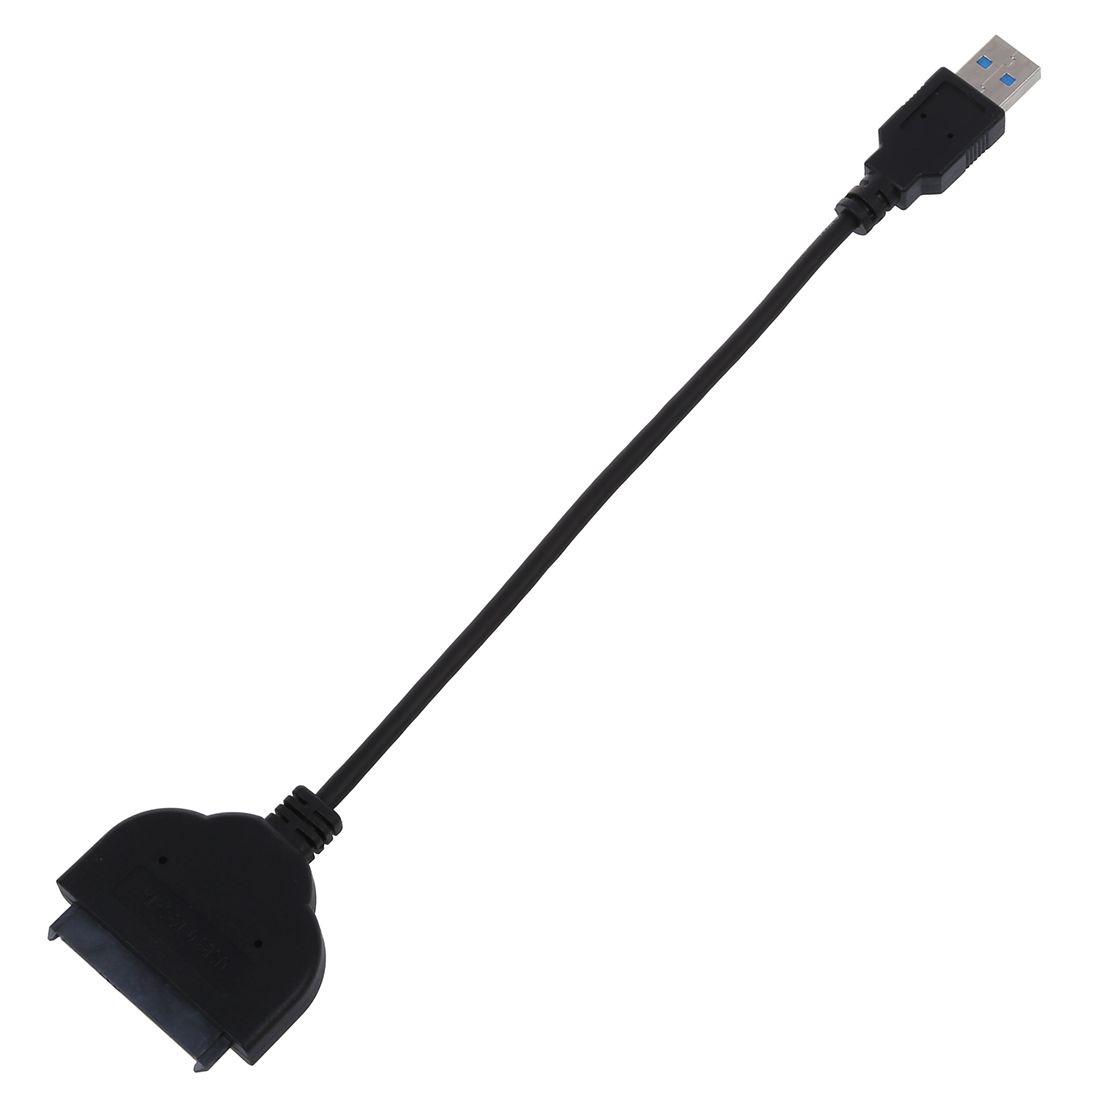 Adaptateur câble de disque dur SATA II Noir 3.0 - 2.5 pouces convertisseur SATA à USB 3.0/UASP-SATA câble adaptateur de disque dur SSD/HDD